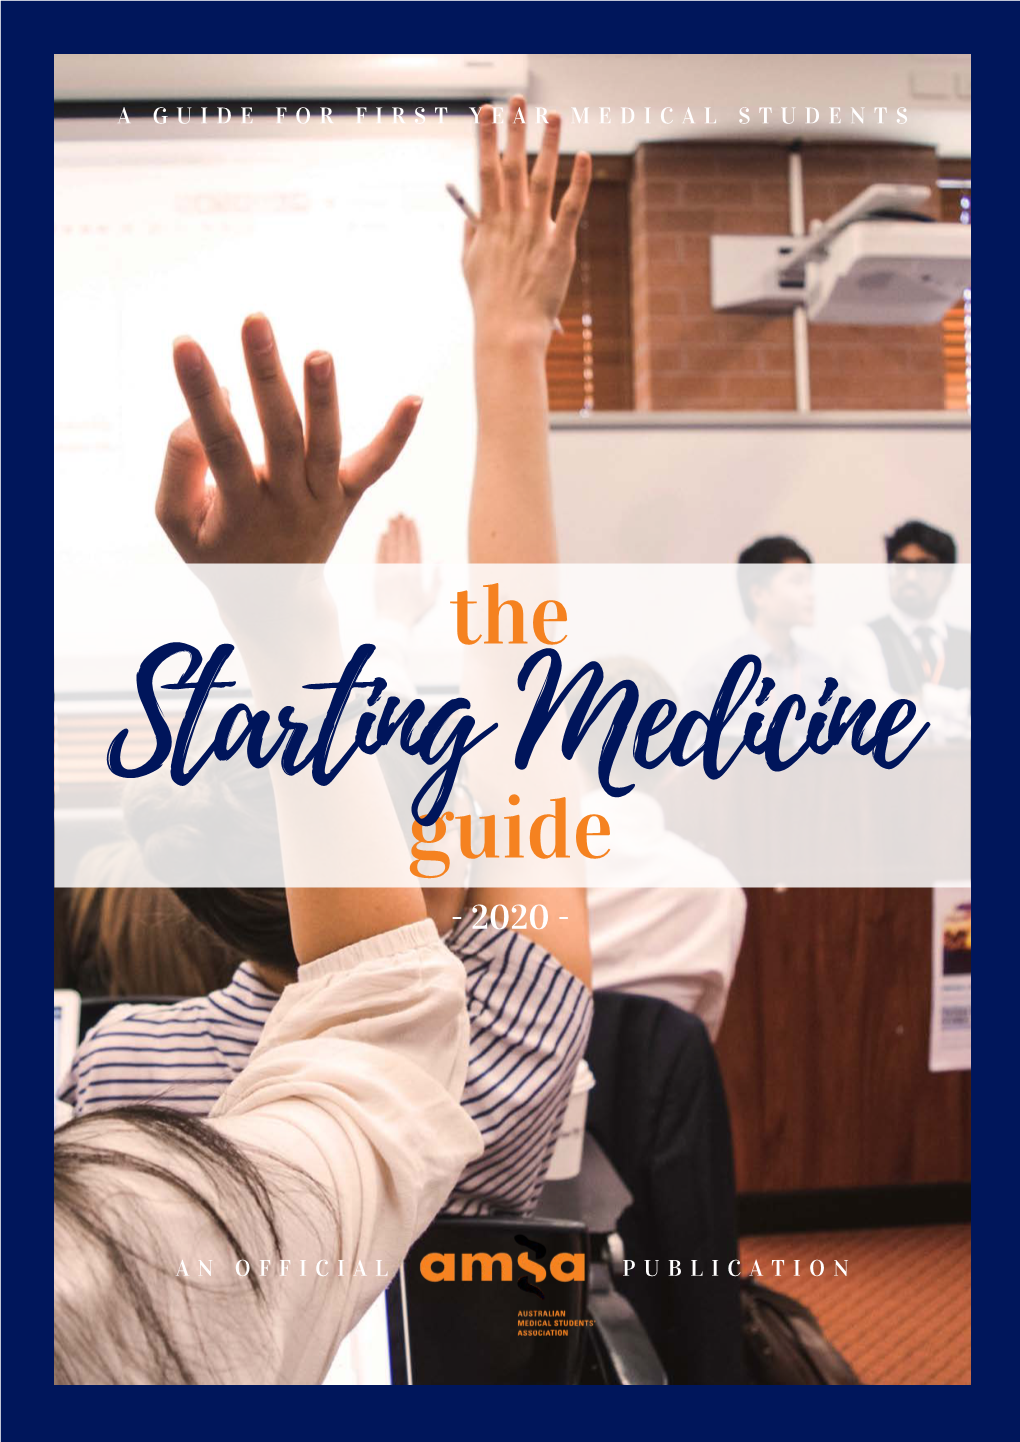 Starting Med Guide